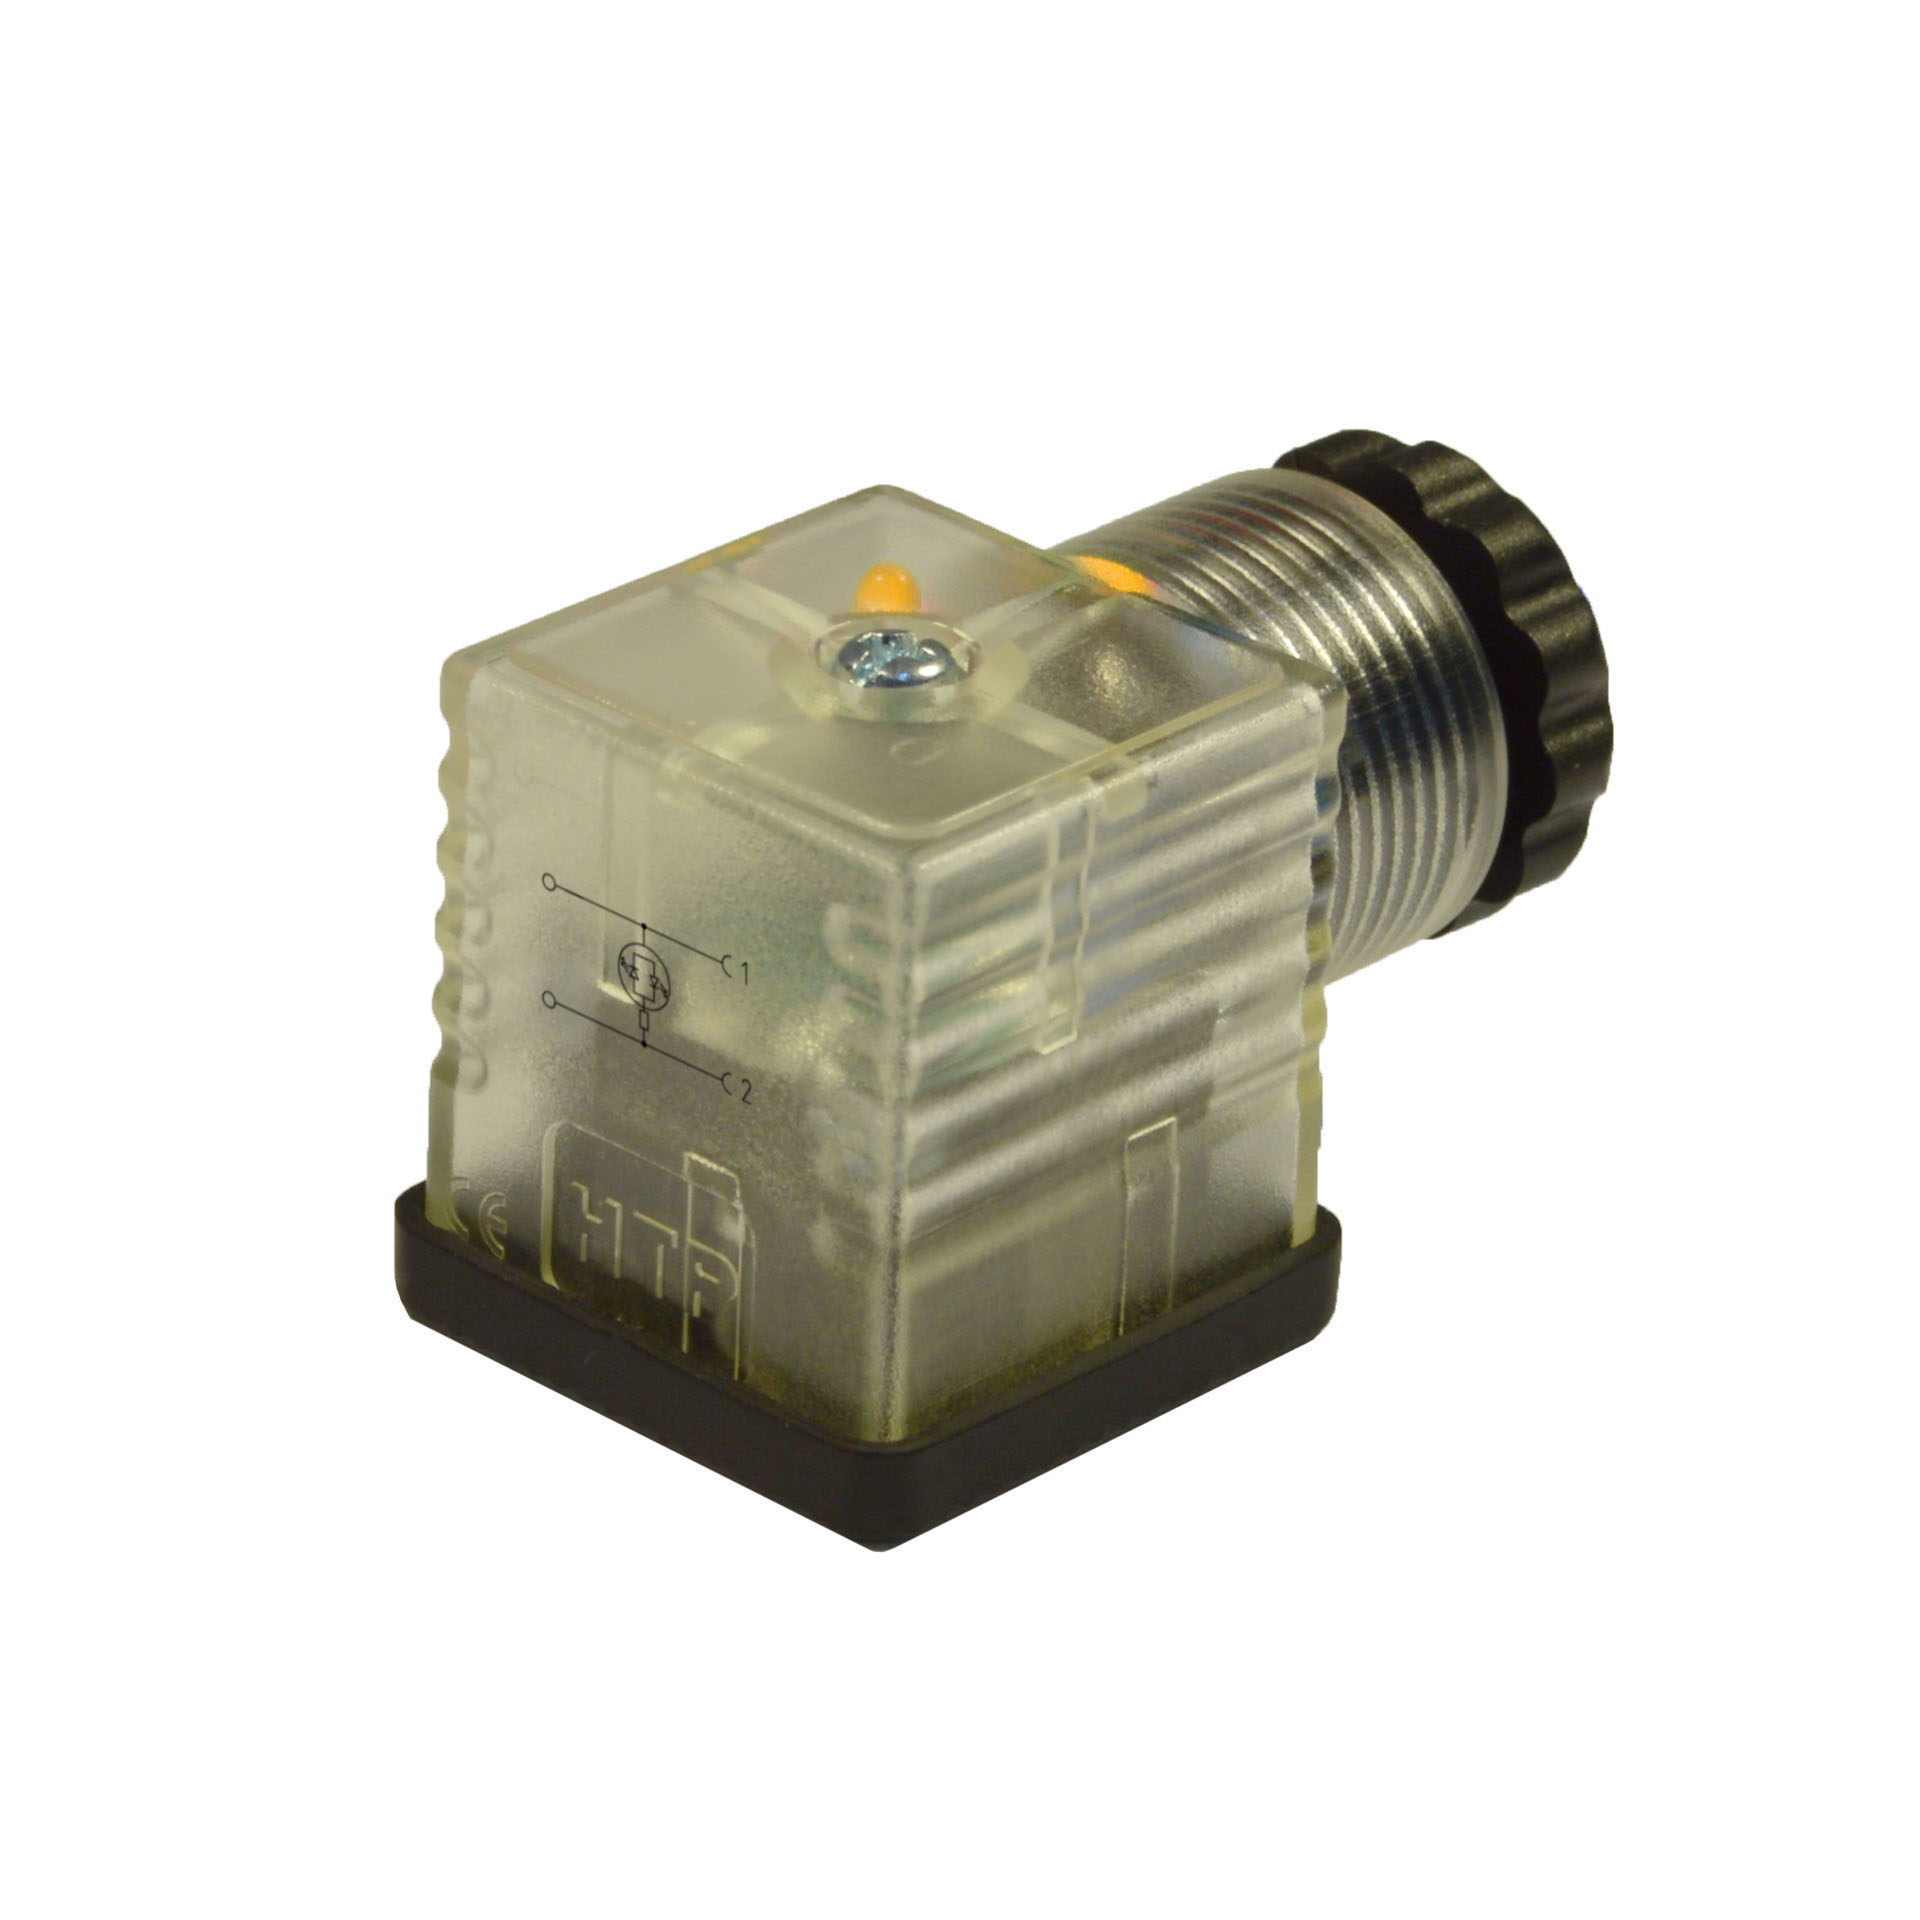 EN175301-803/A a cablare,2p+T(h.12),LED giallo,24VAC/DC,PG9/11unif.